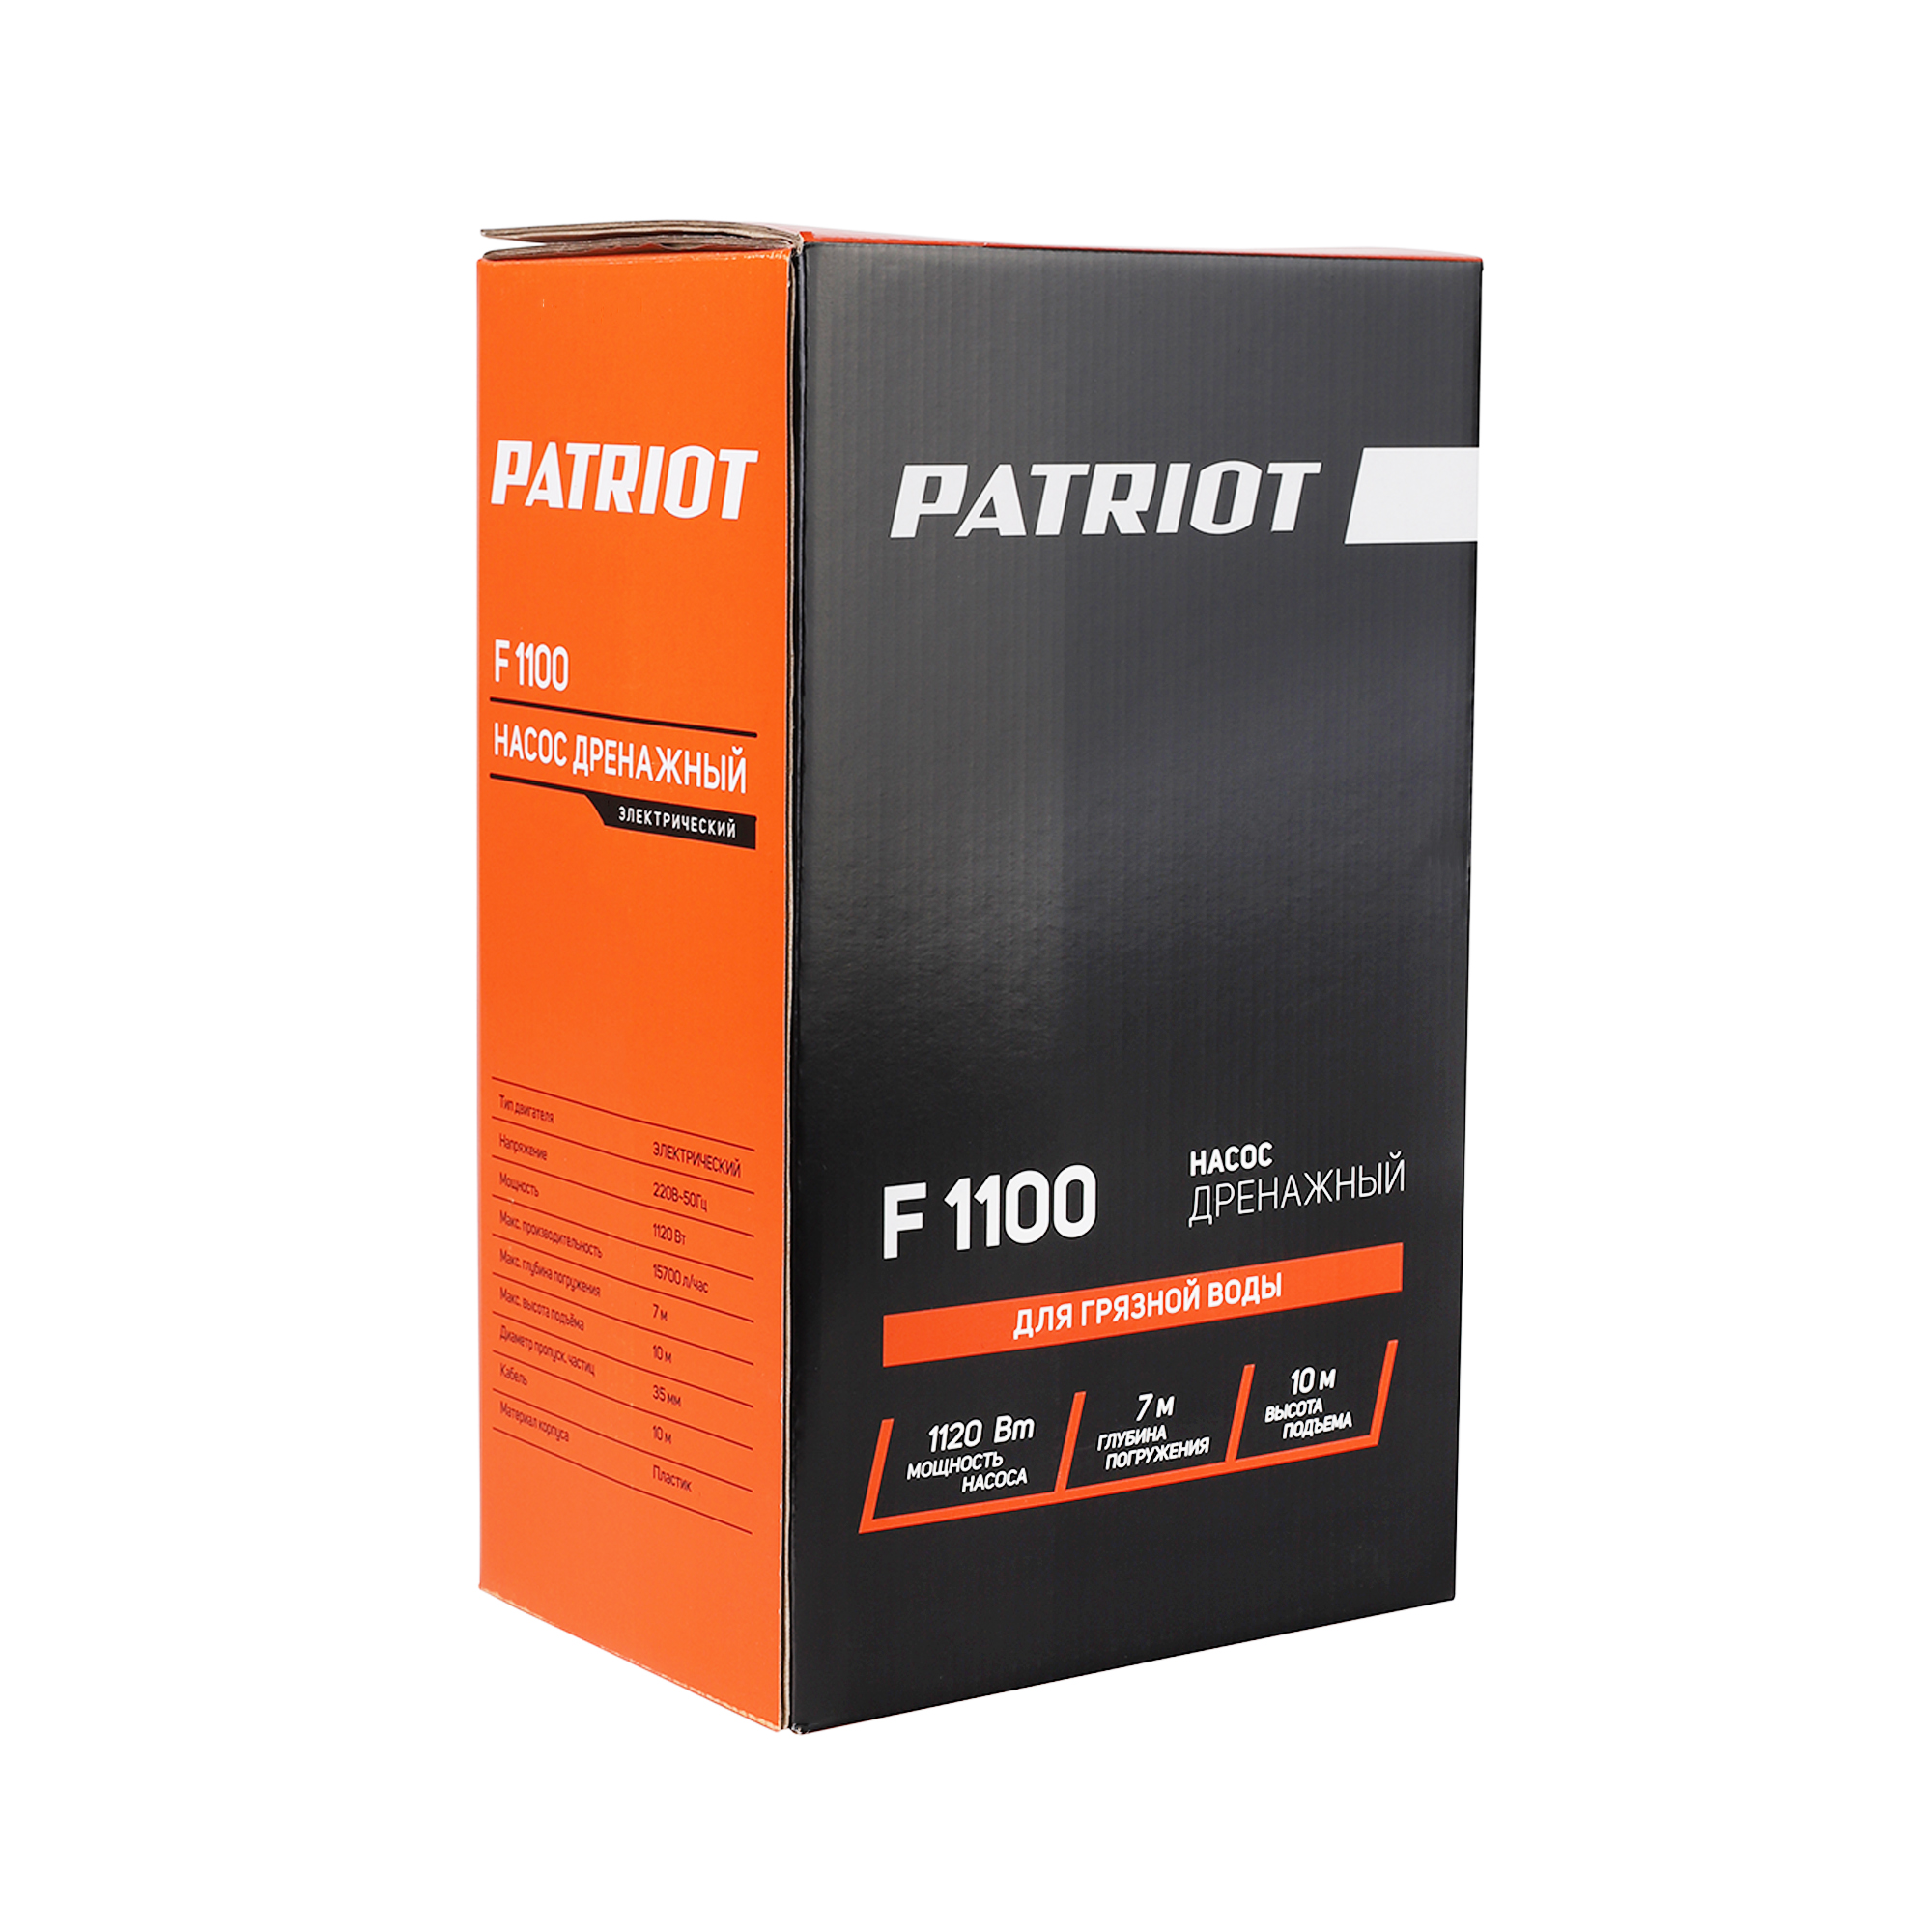 Насос дренажный f-1100  1120 вт (для грязной воды) (1/4) "patriot" 315302469